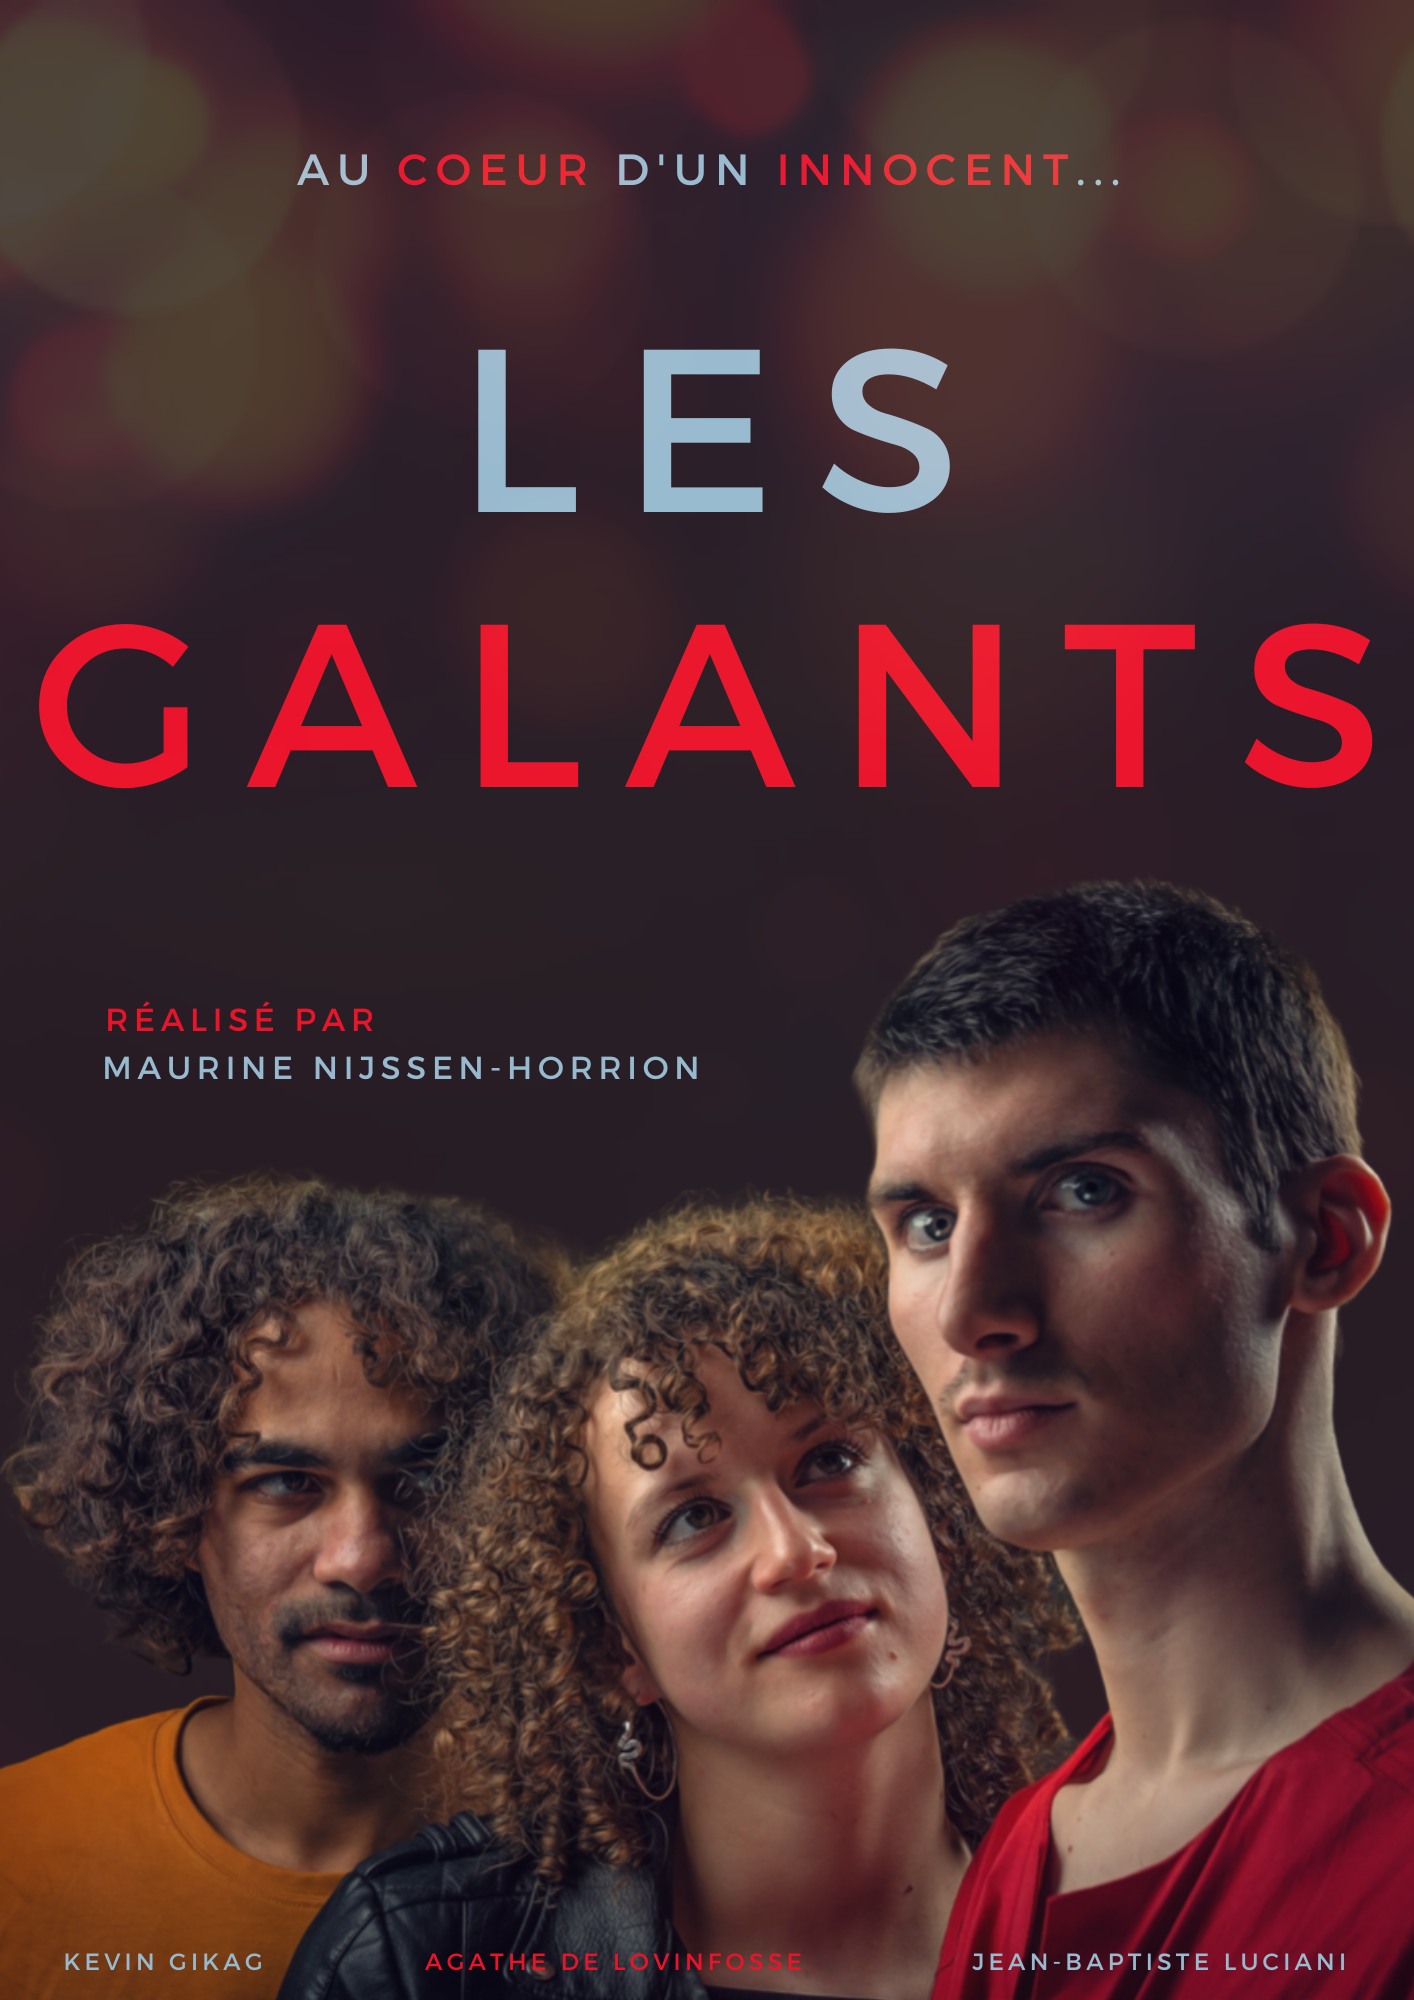 Ciné-débat "Les Galants" en collaboration avec la Maison Arc-en-Ciel de Liège